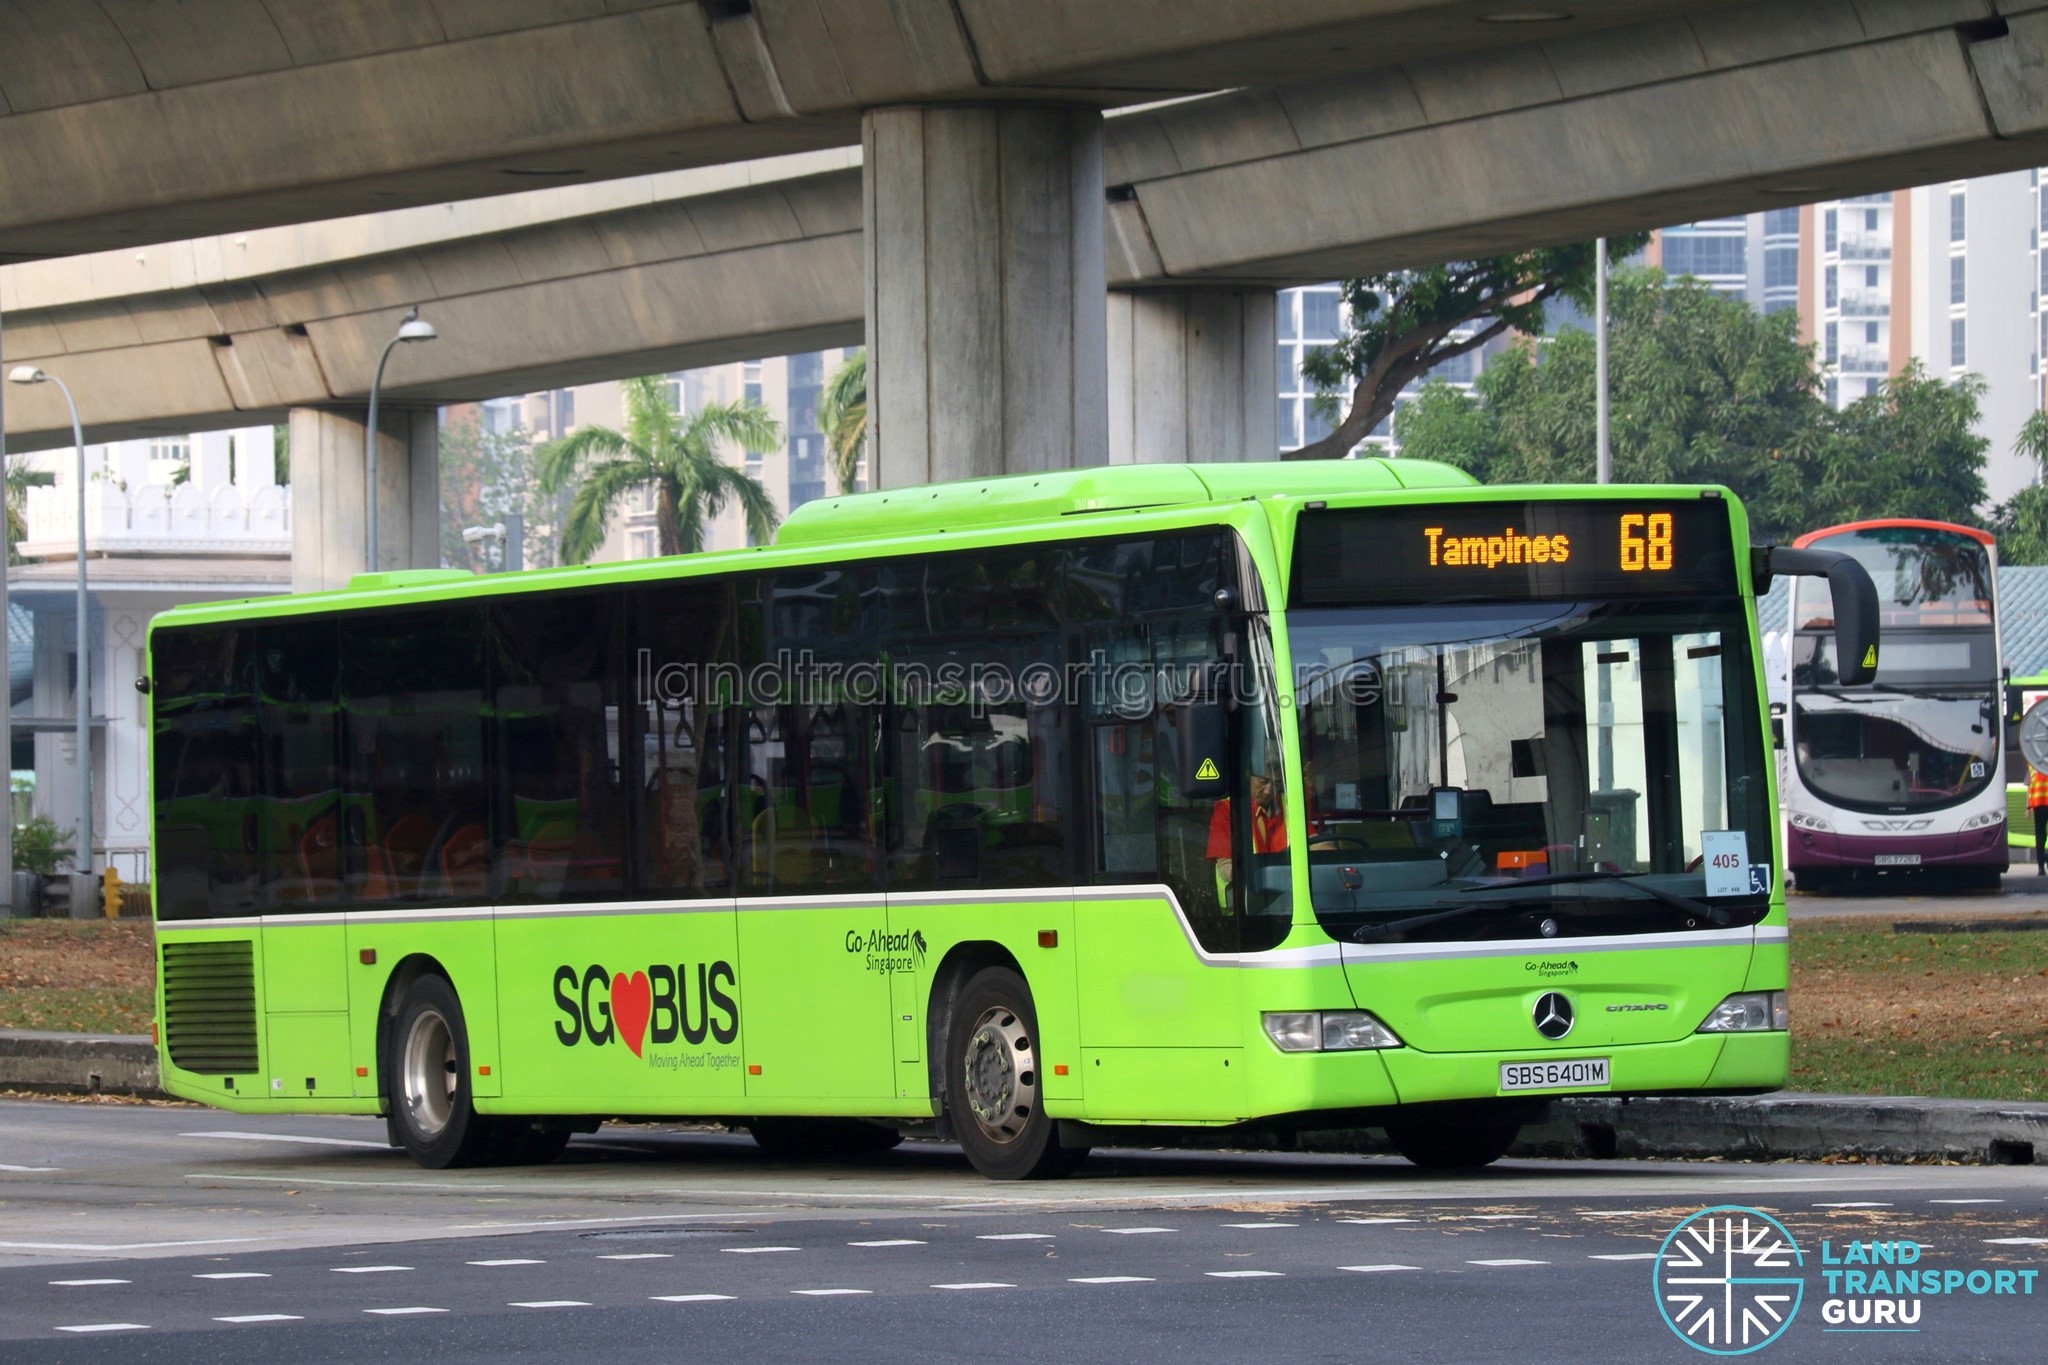 Service 68: Go-Ahead Mercedes-Benz Citaro (SBS6401M)